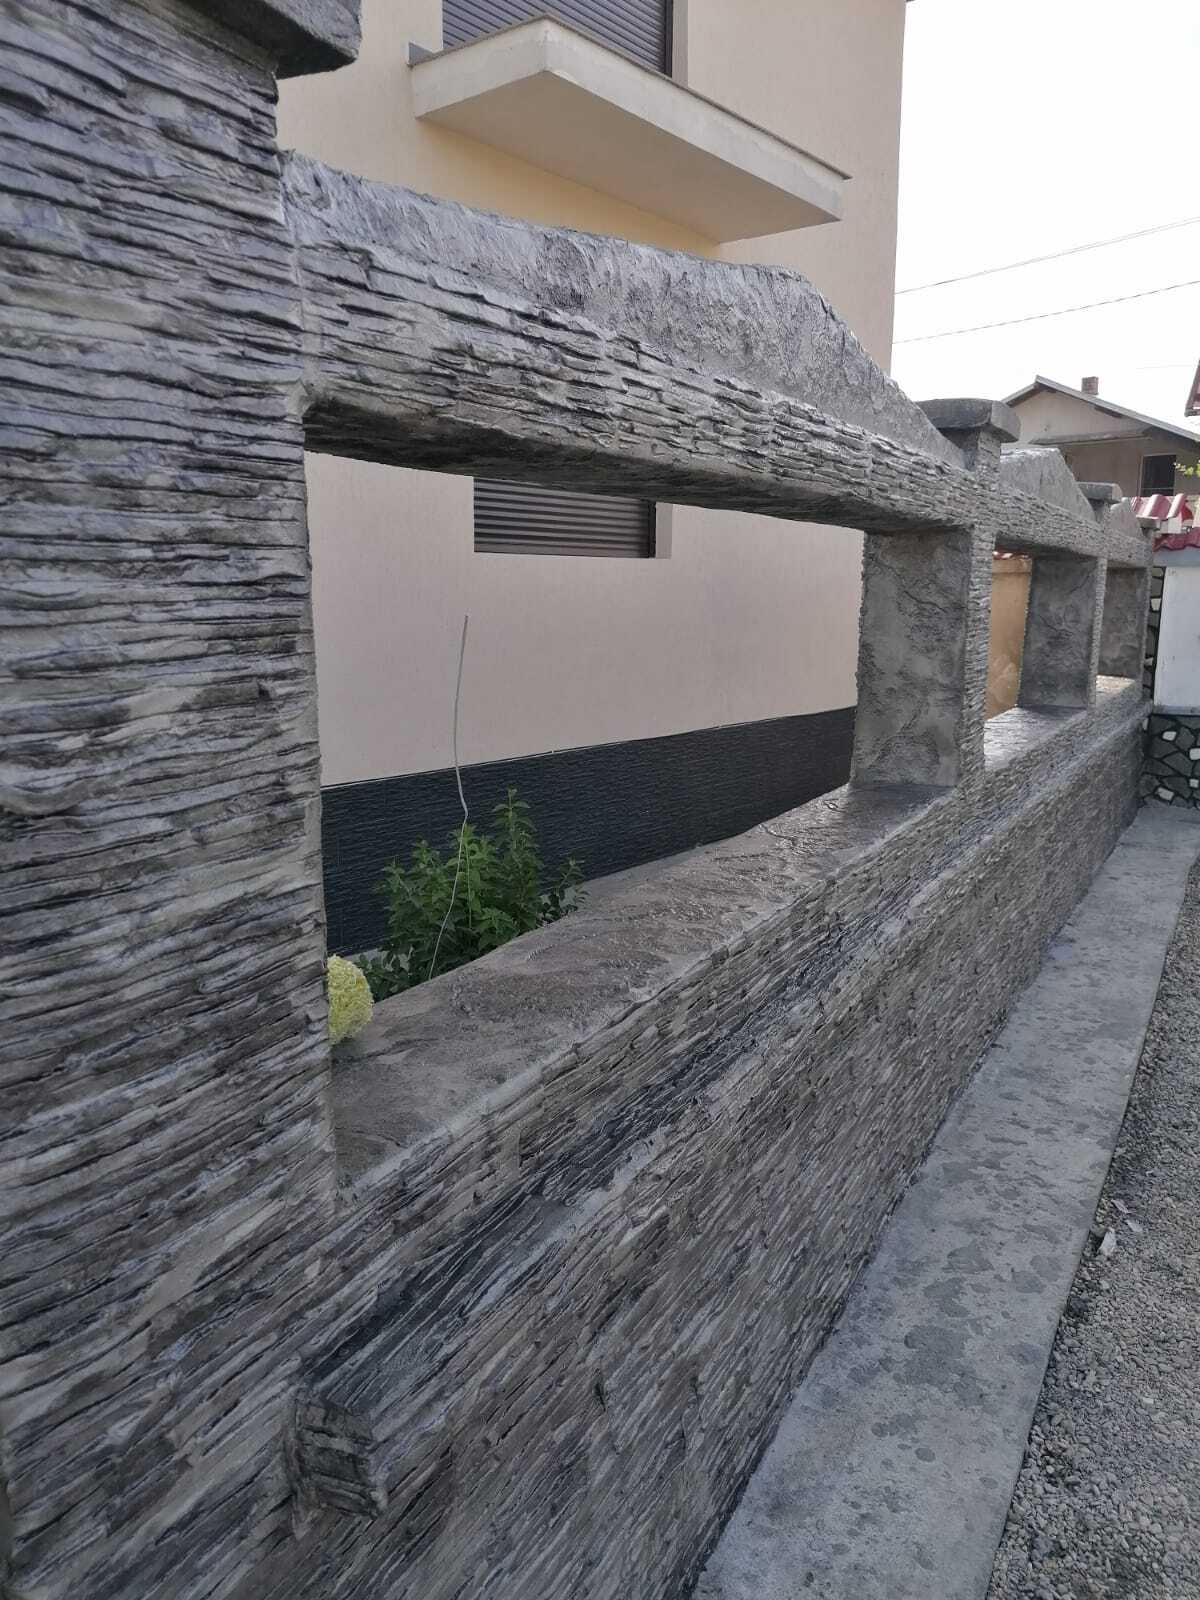 fasada kuće s vertikalnim otiskom betona koji imitira kamen